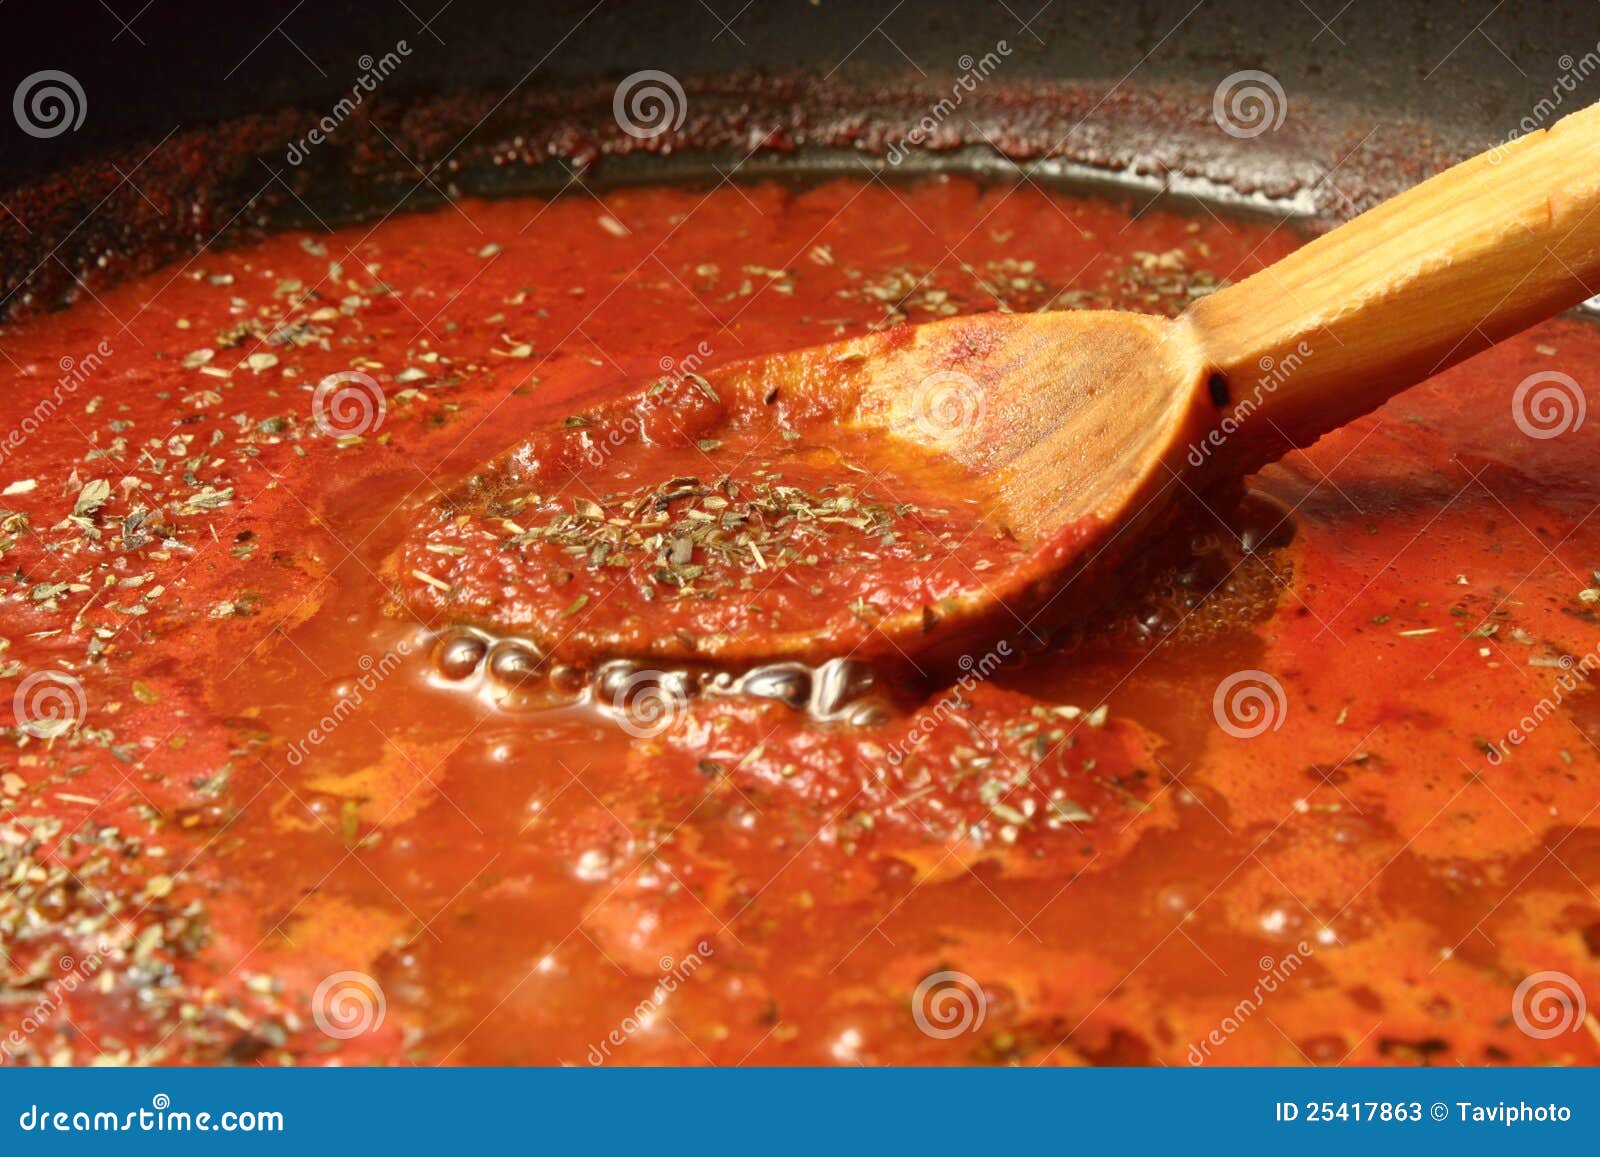 томатный соус для пиццы как делать фото 107